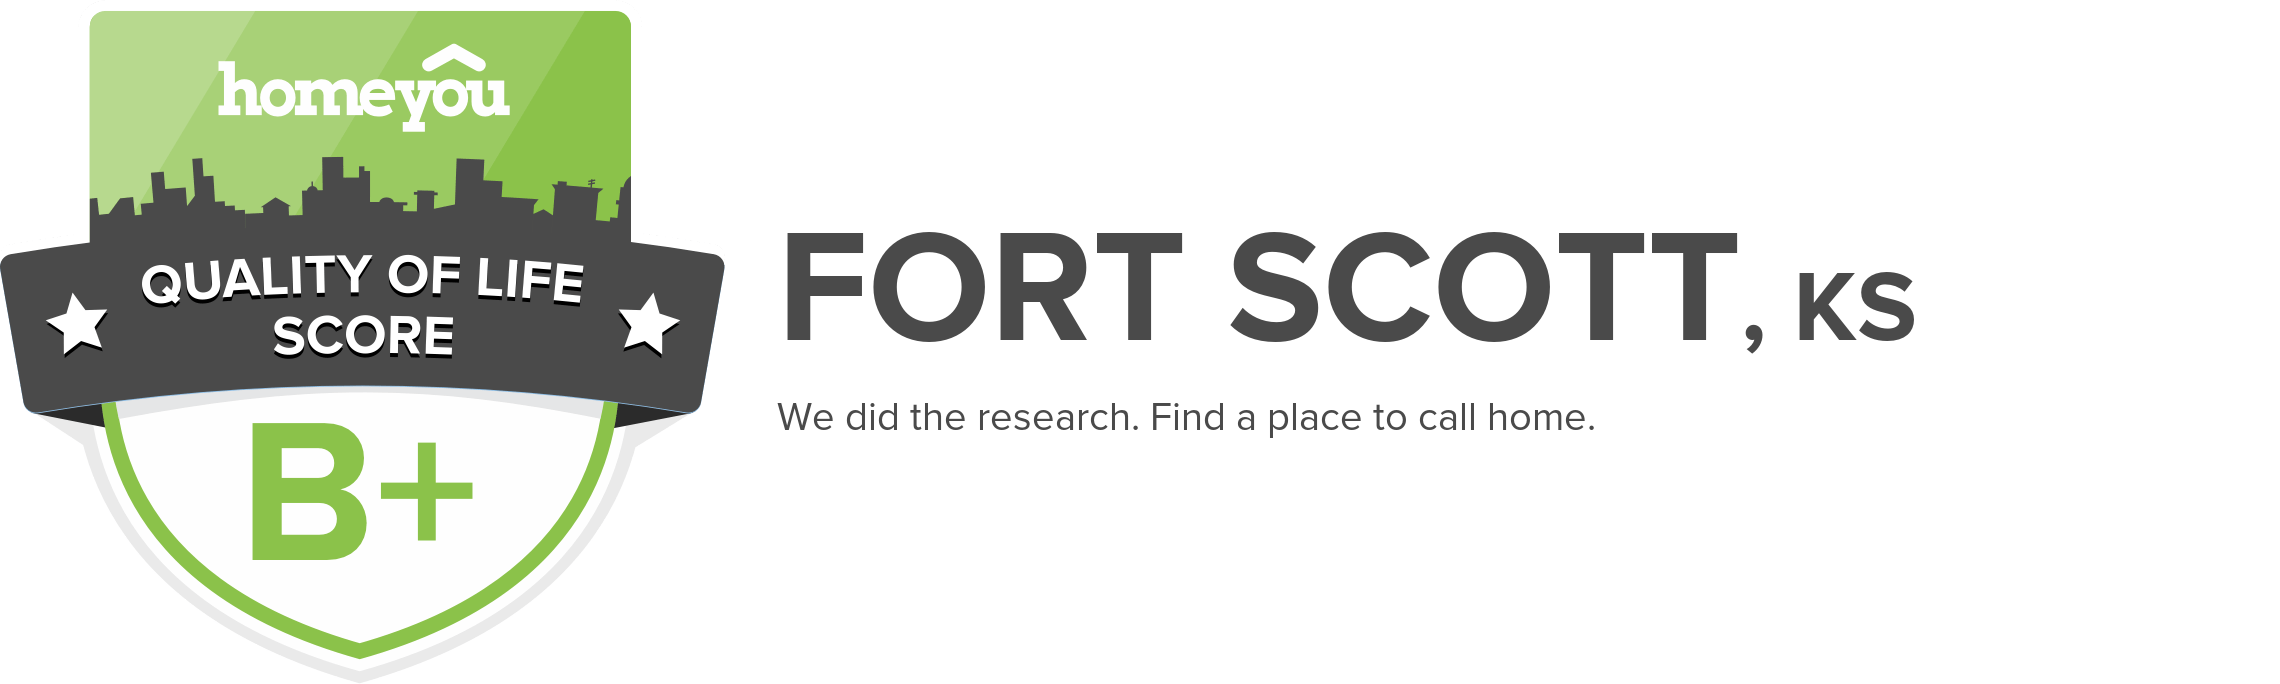 Fort Scott, KS